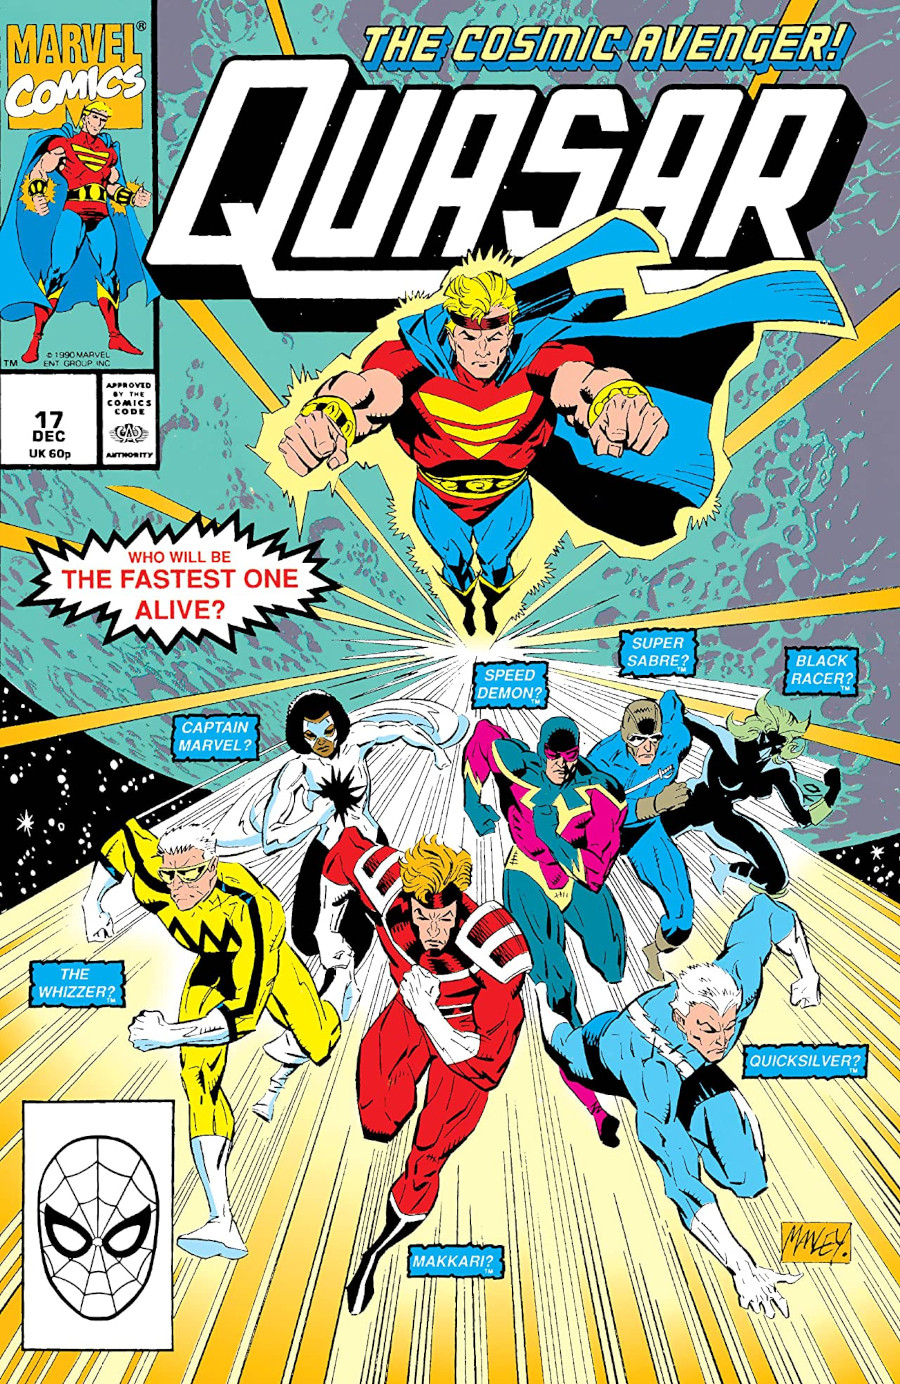 The Flash vs Makkari , Mercúrio, Capitão Marvel e outros velocistas da Marvel na HQ HQ "Quasar #17

